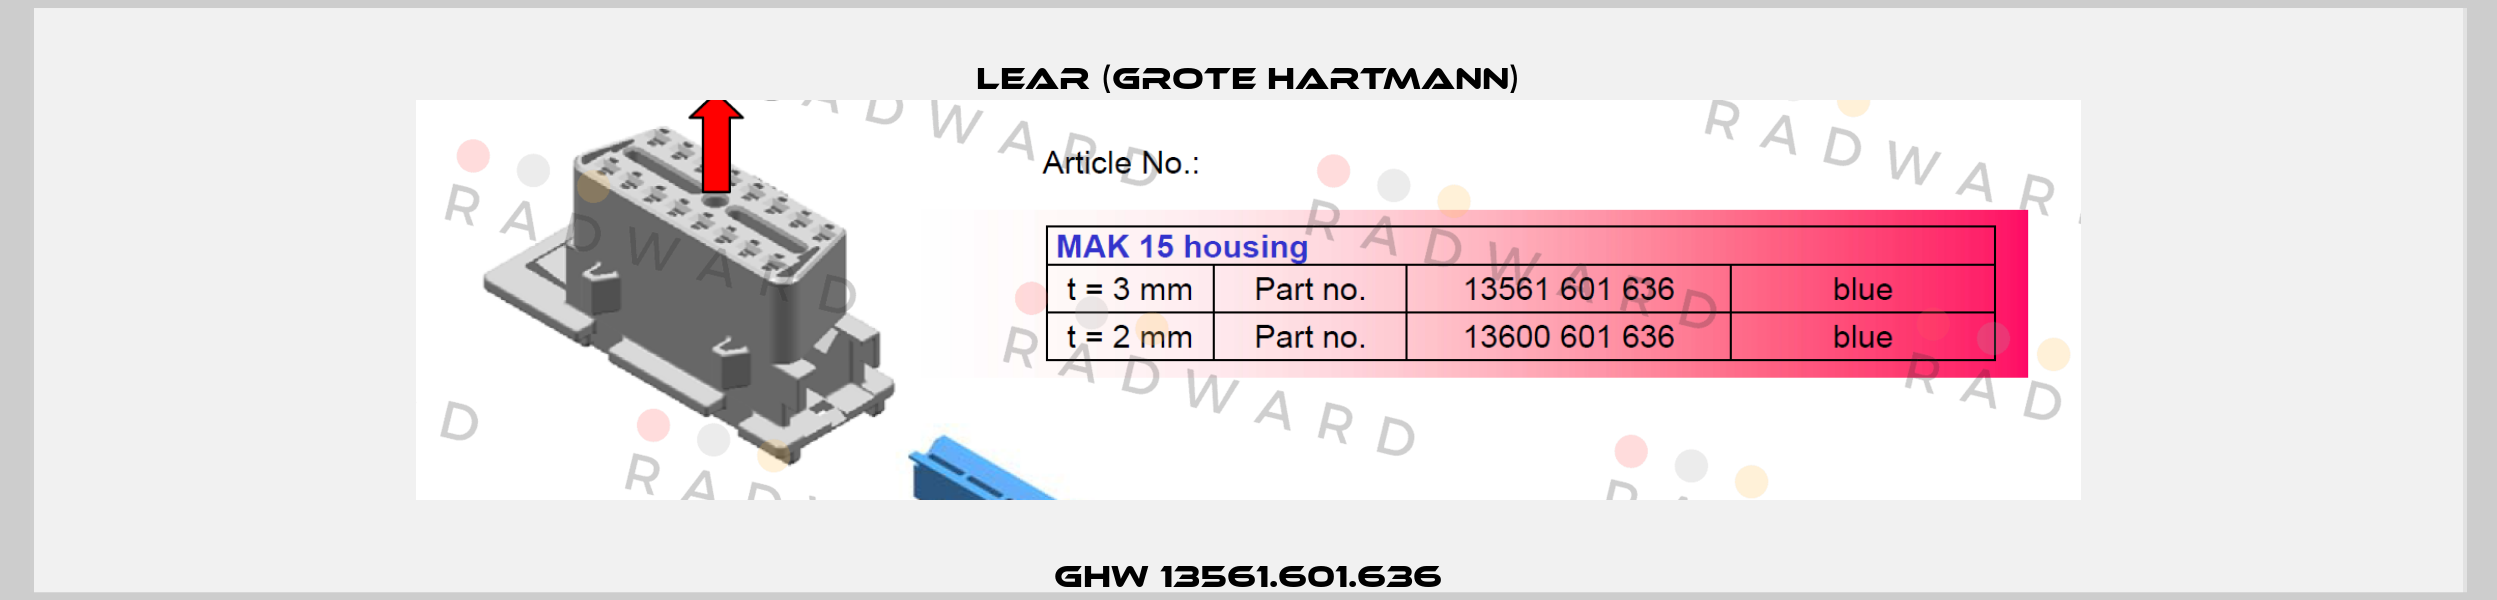 GHW 13561.601.636 Lear (Grote Hartmann)